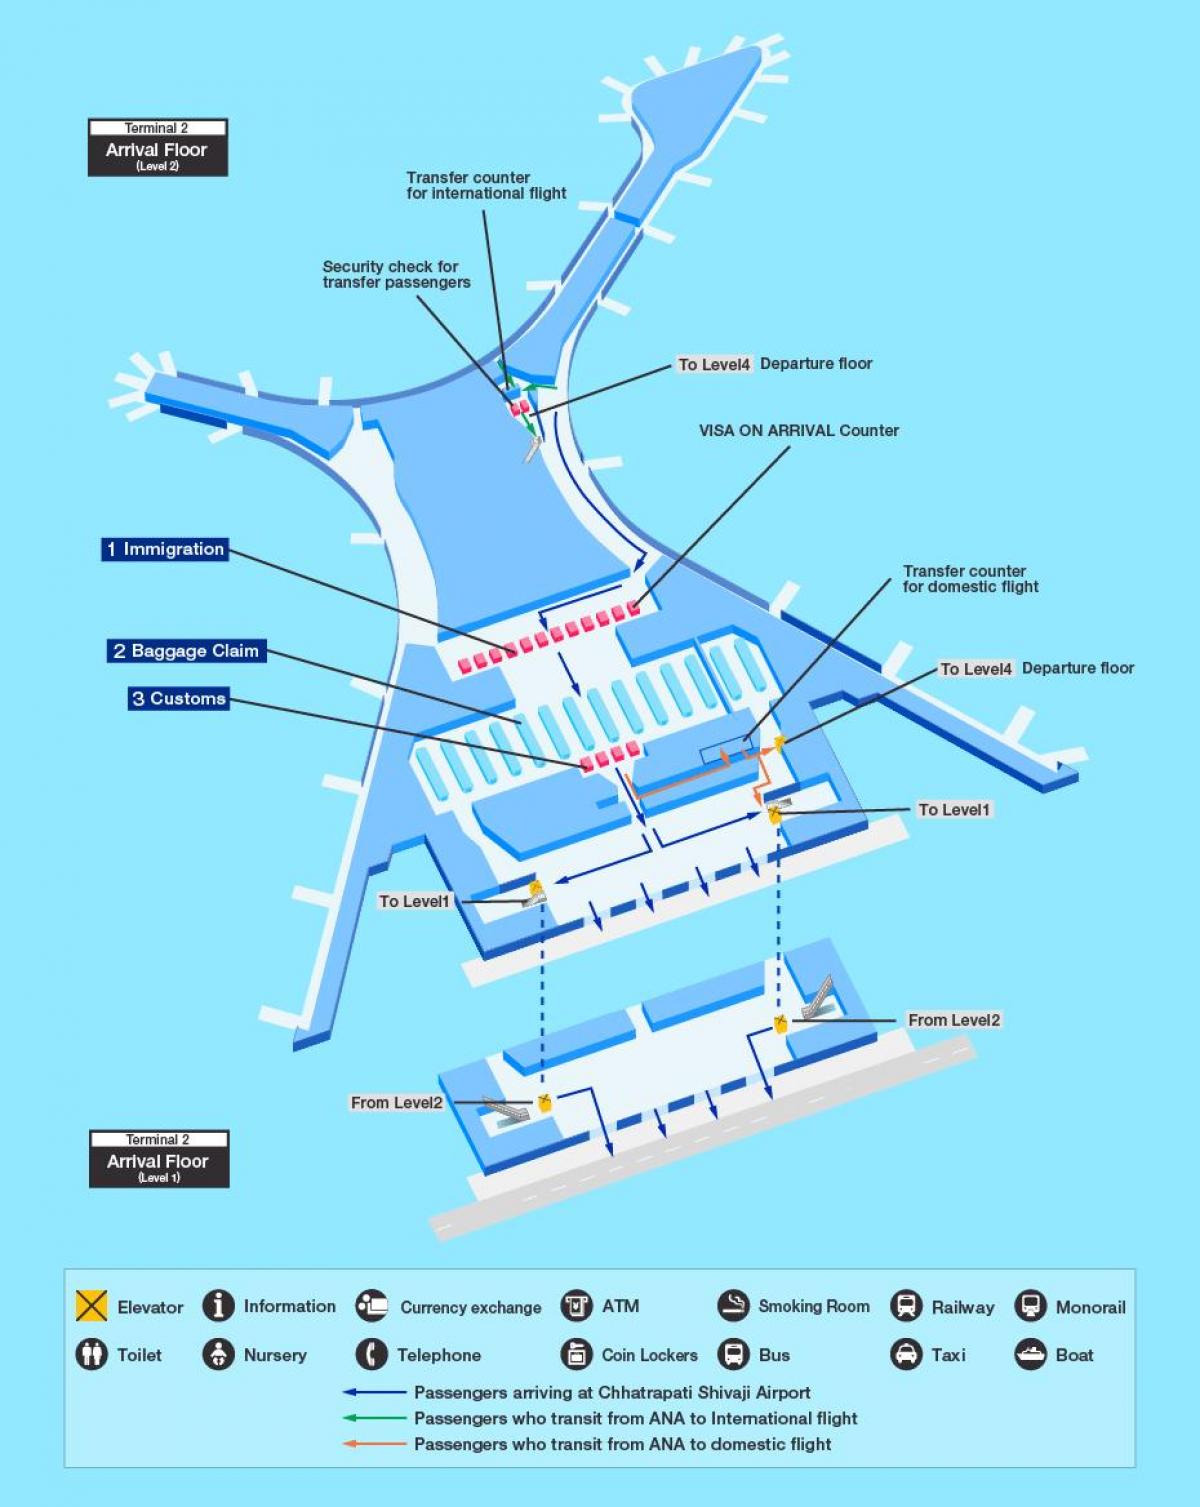 kort over Mumbai international airport